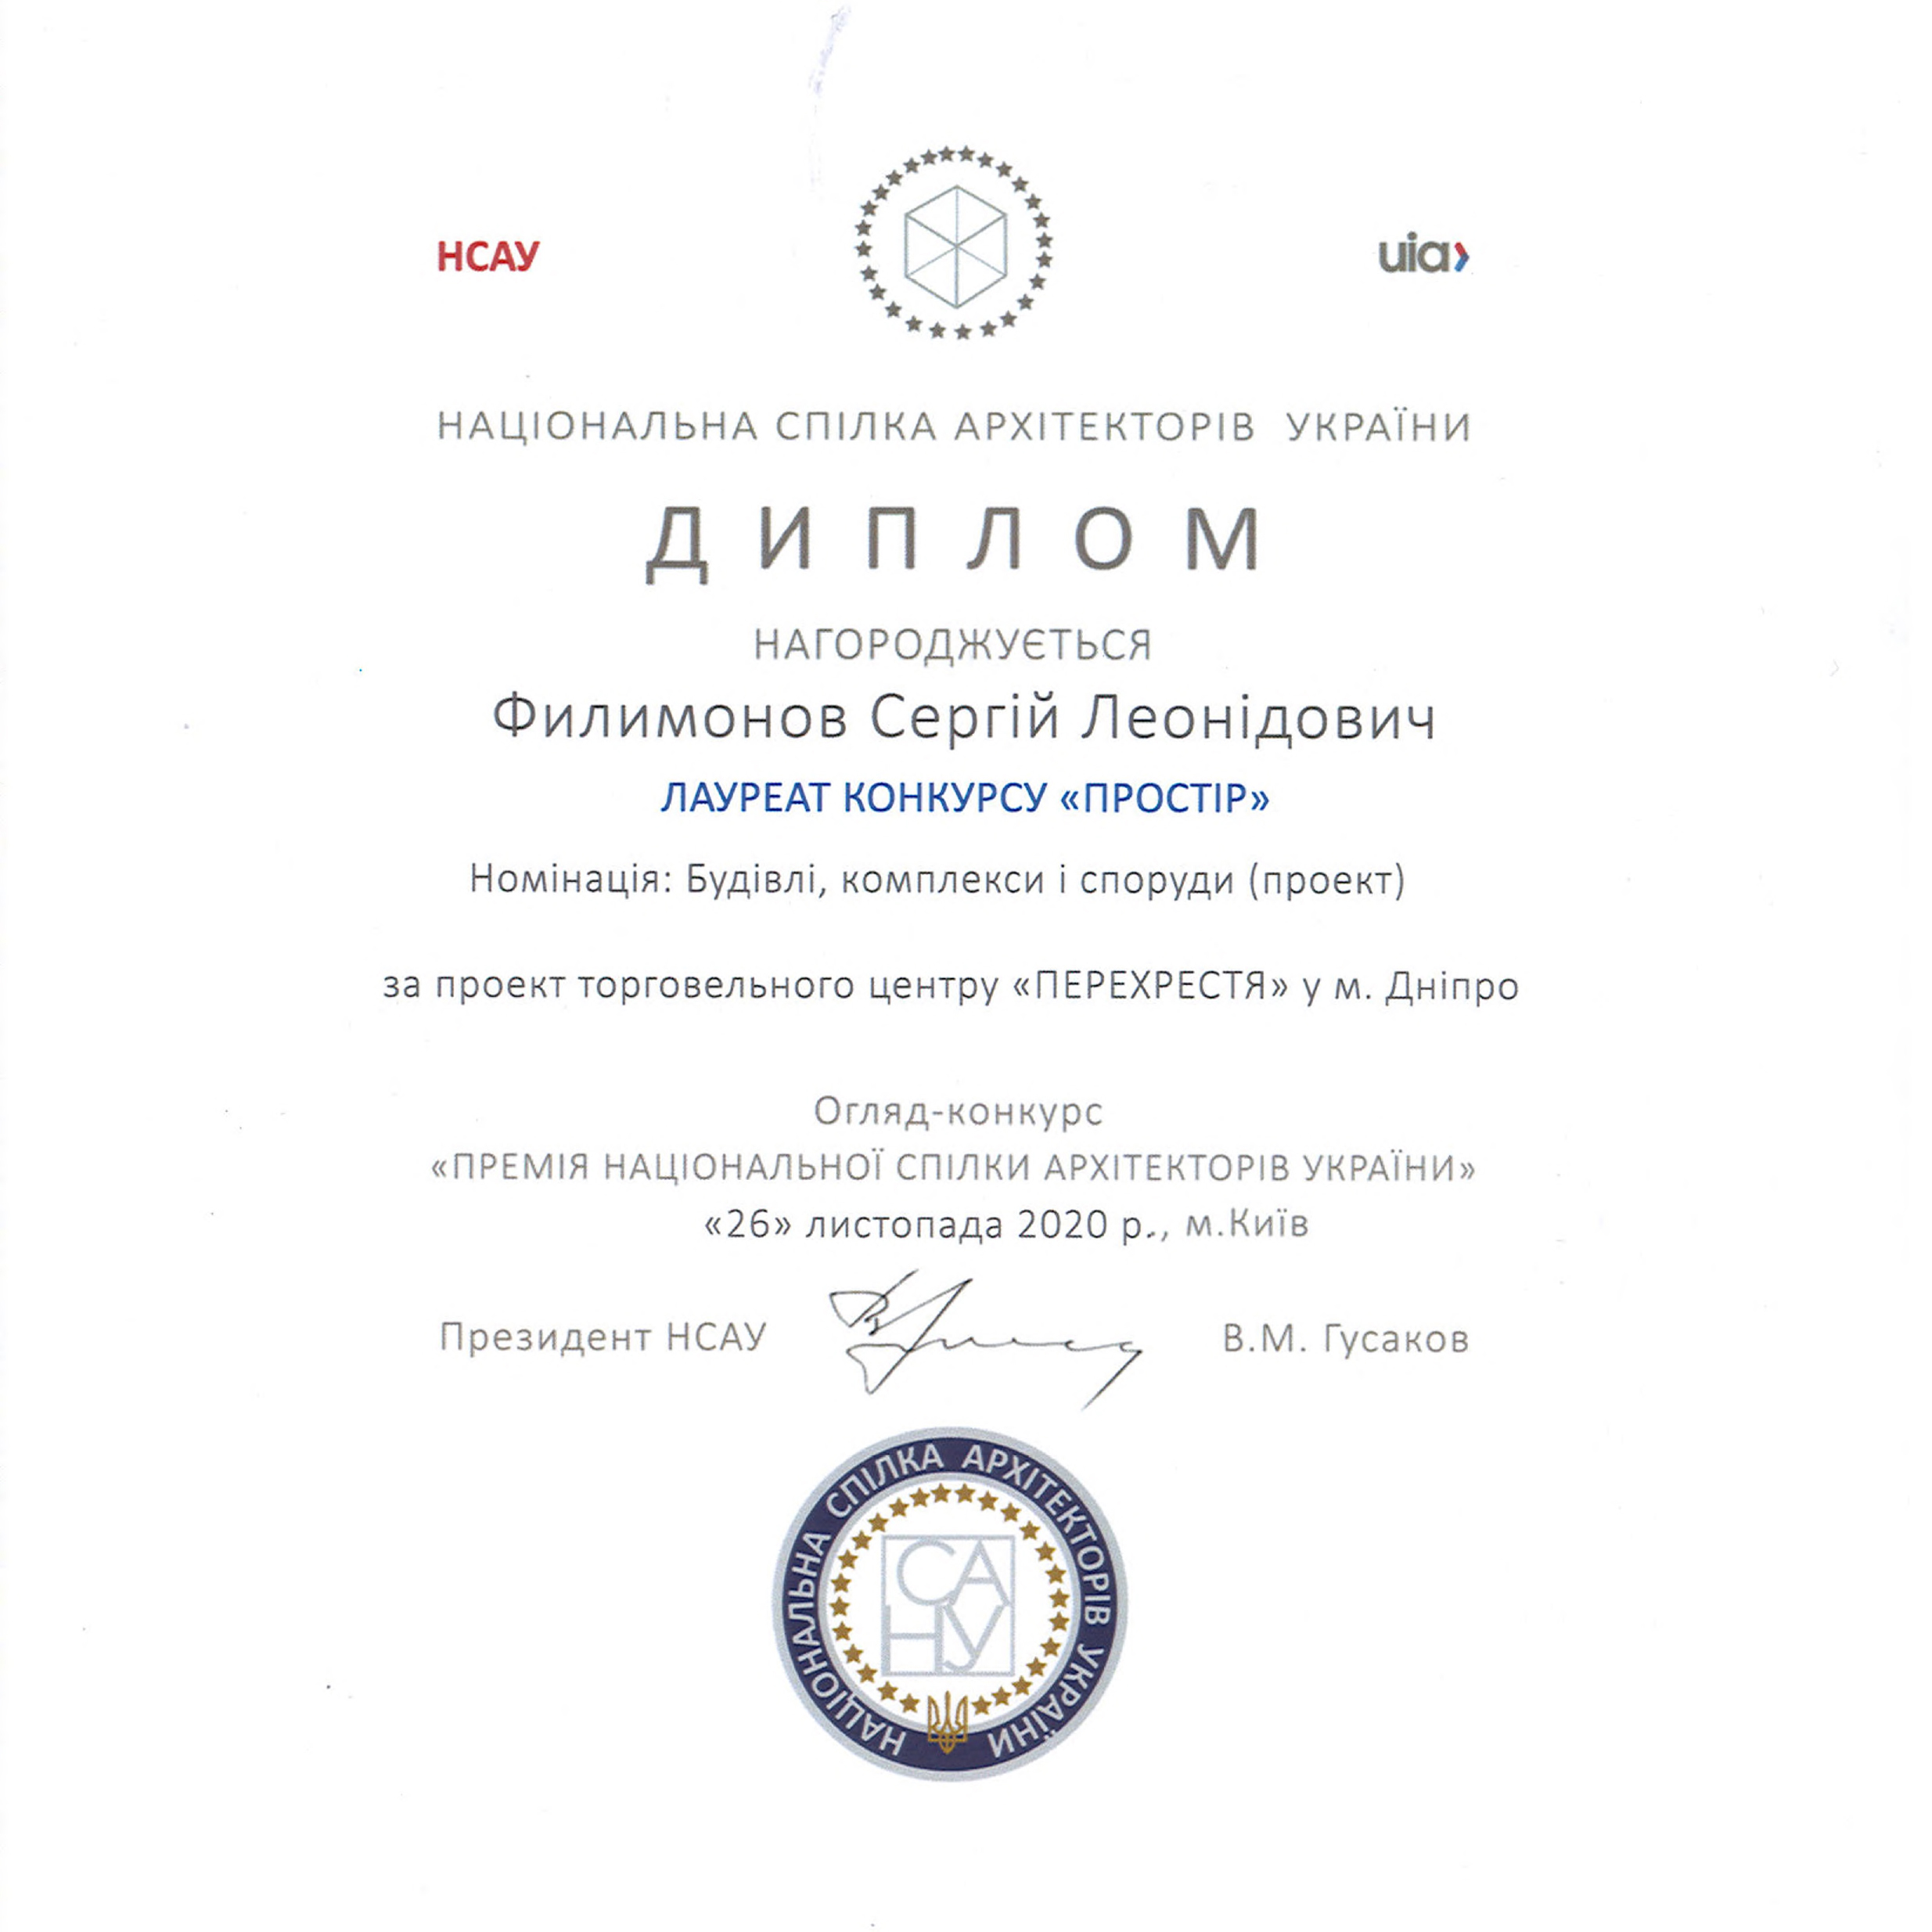 Diplom NSAU_2020 Perekrestya-1